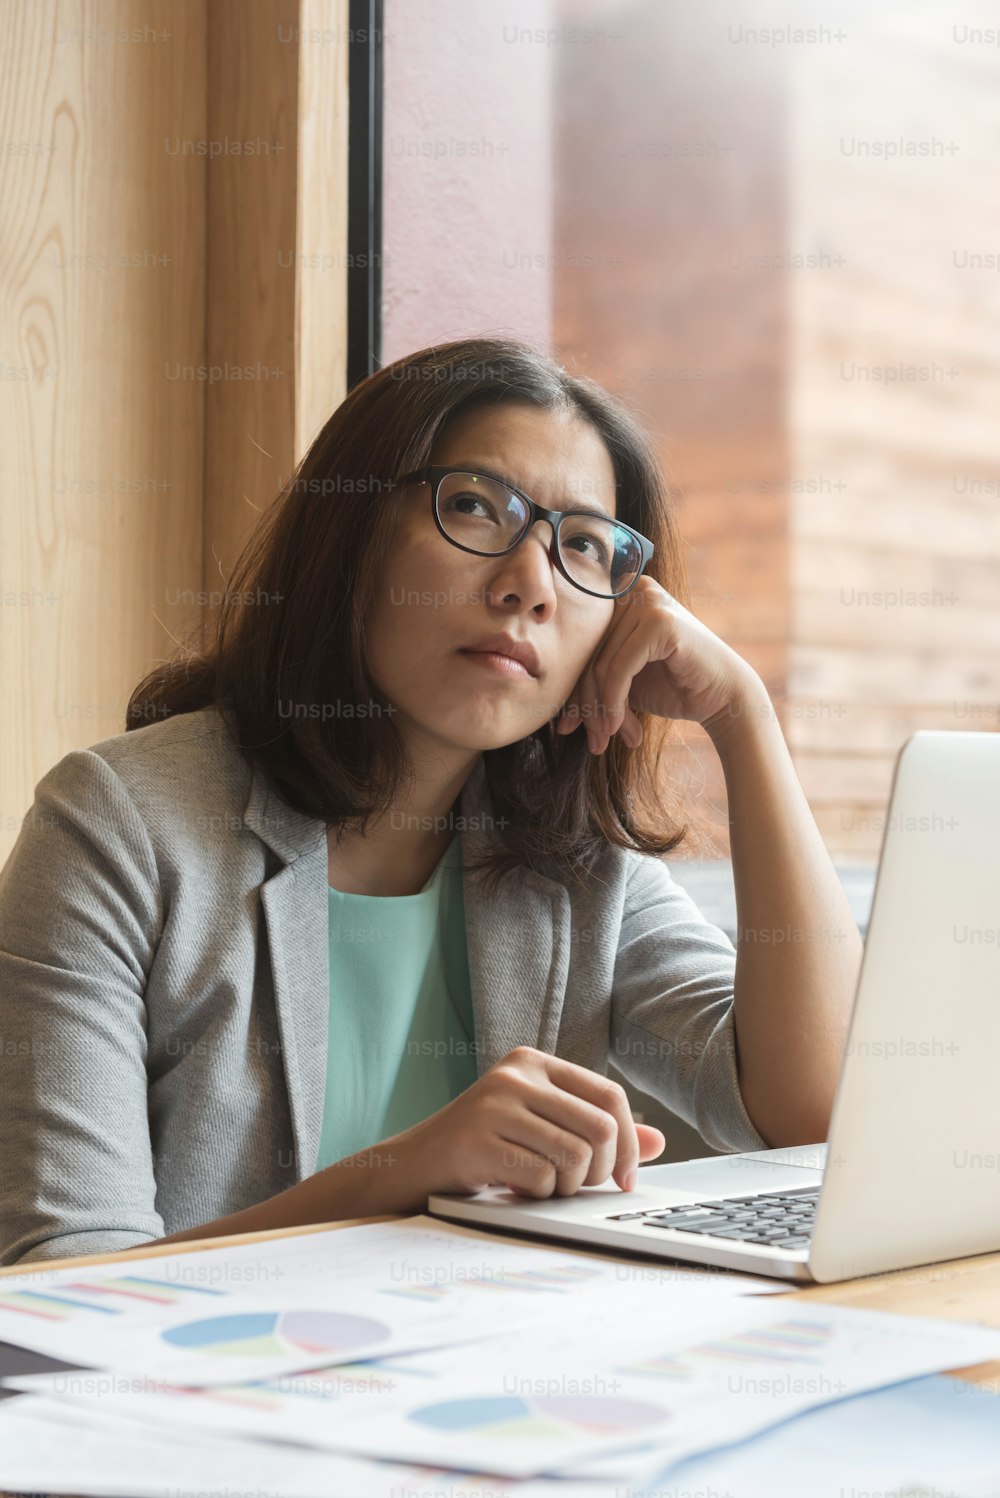 노트북을 들고 직장에서 일하는 것에 대해 생각하는 아시아 비즈니스 여성.